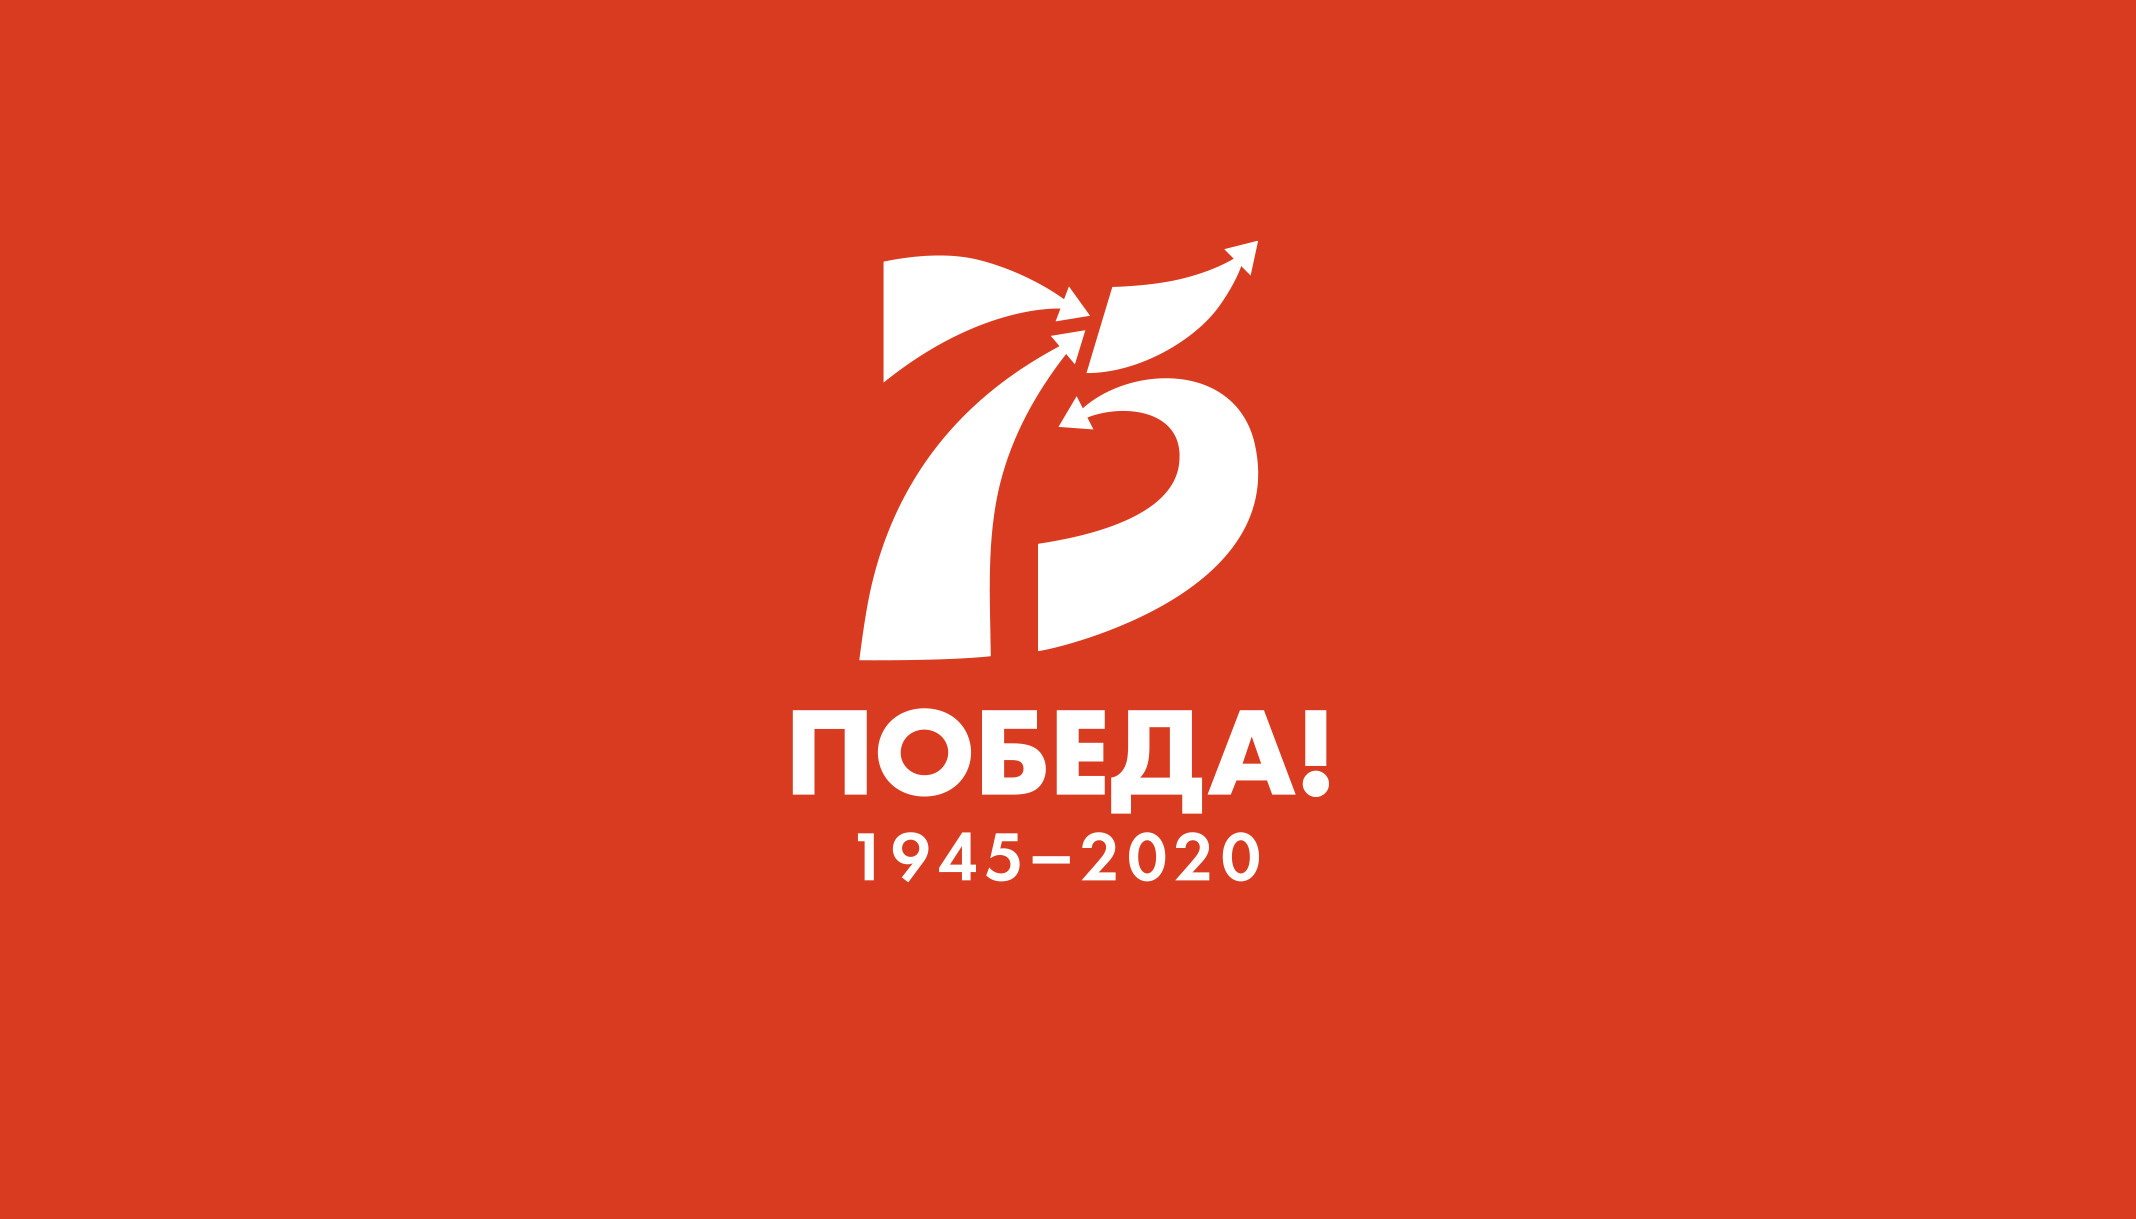 Информация о конкурсе "Наша Победа 75" размещена на основном информационном ресурсе года Памяти и Славы.